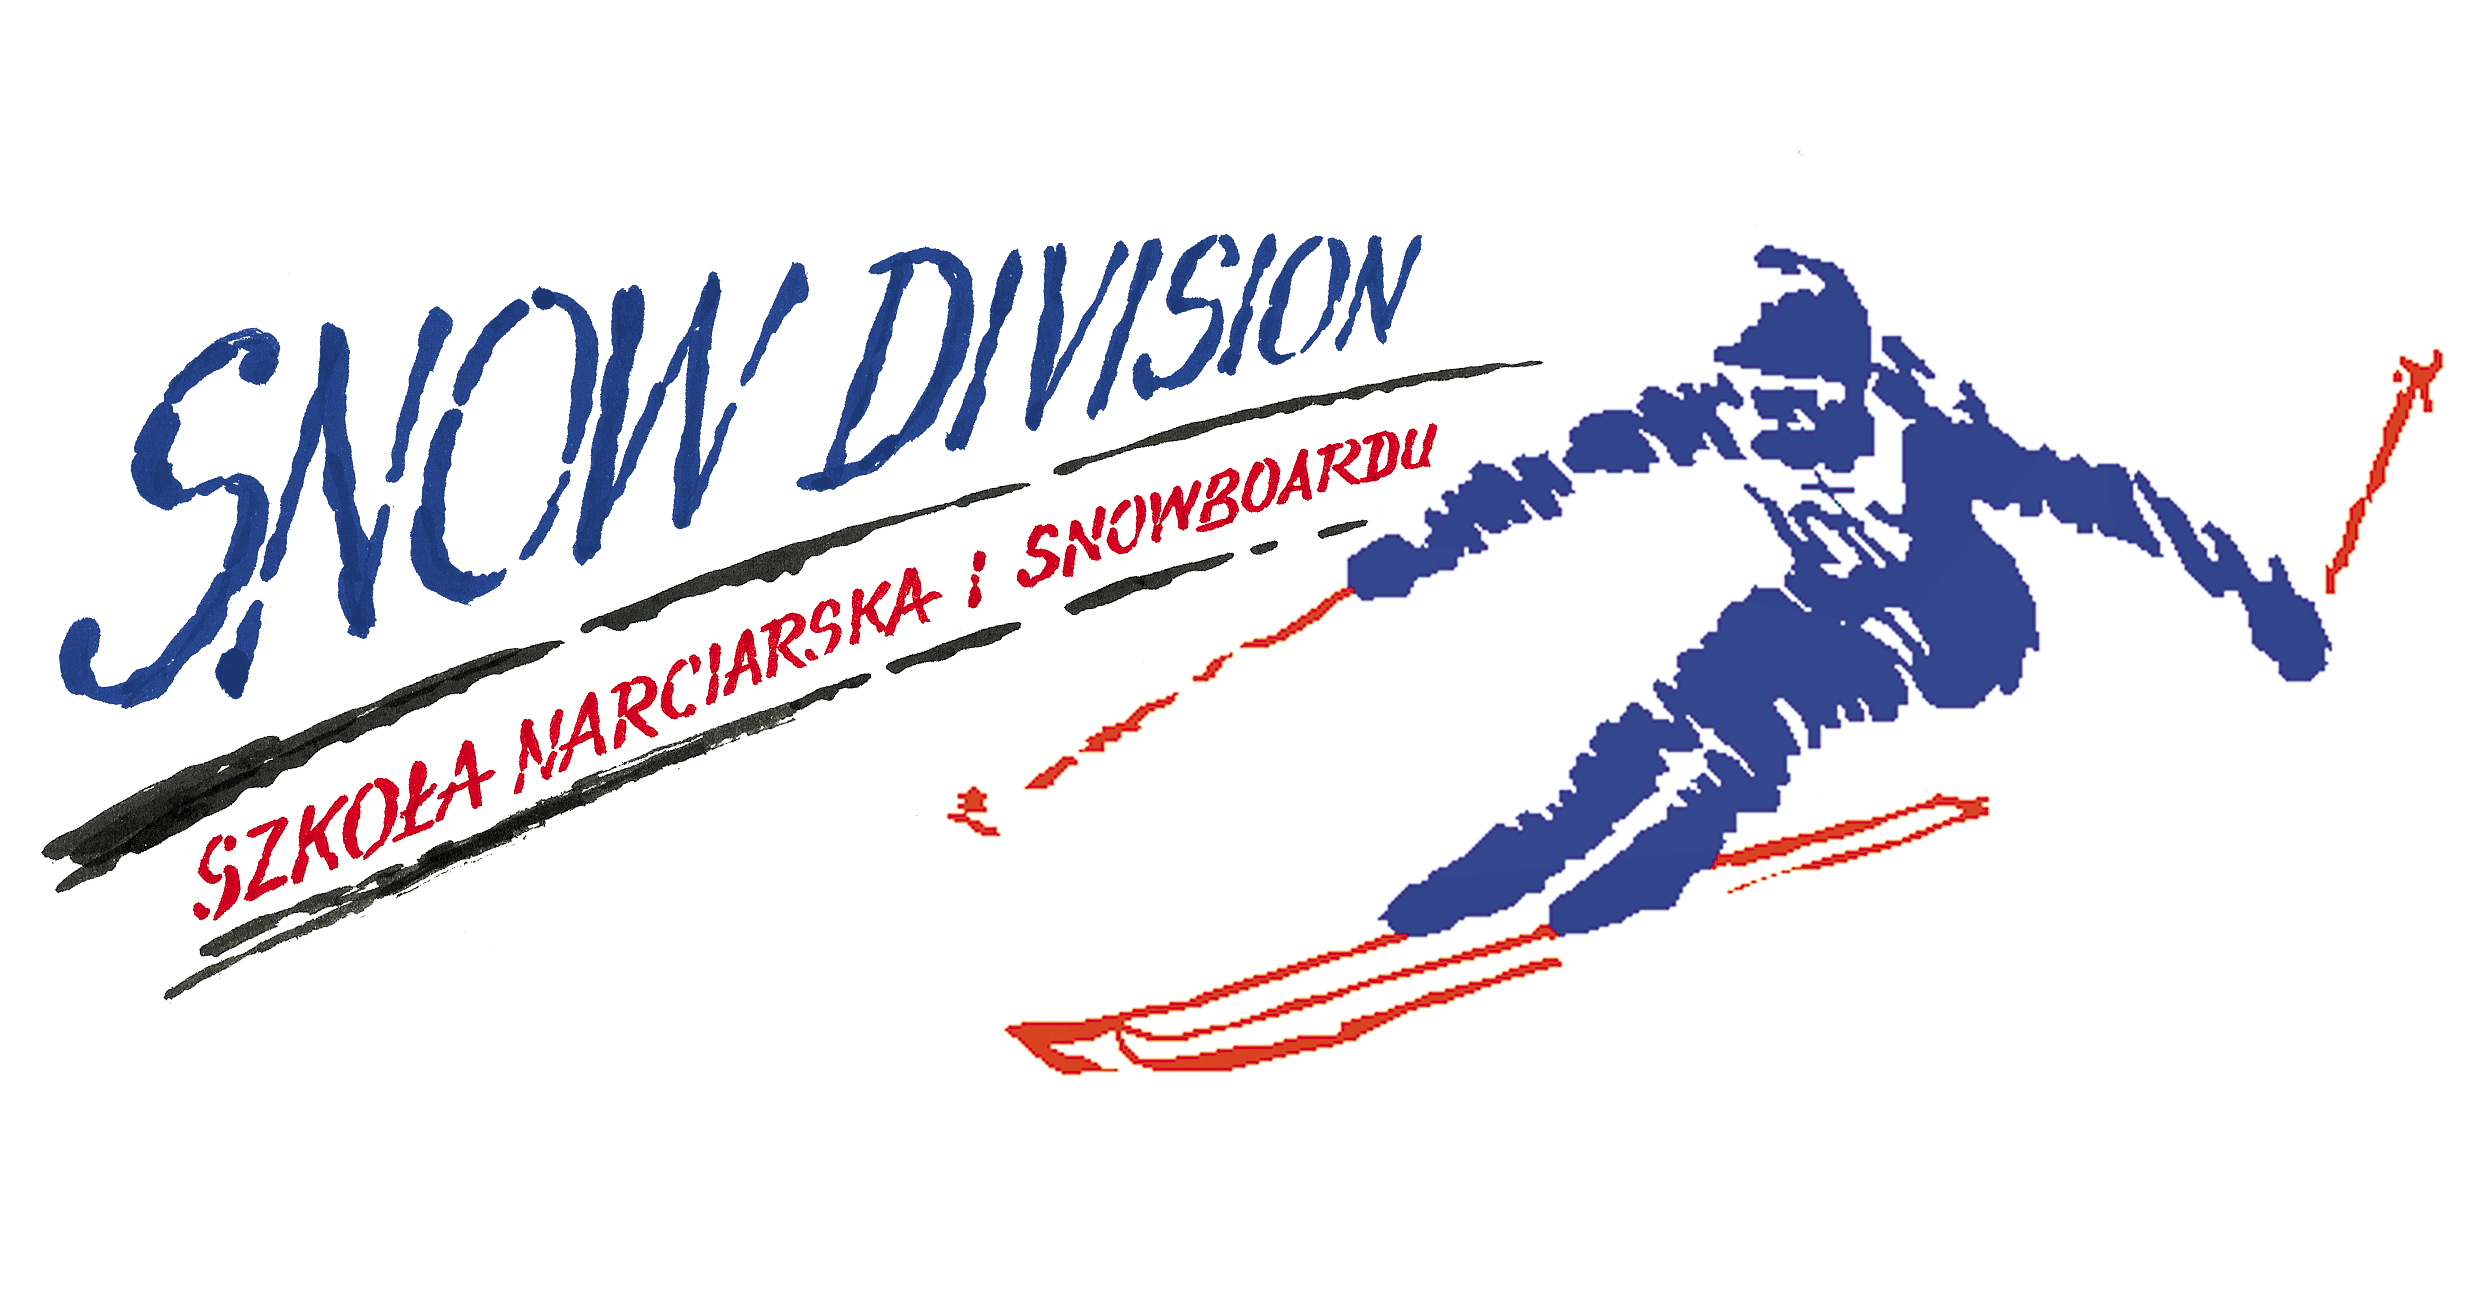 rgb_snowdivision